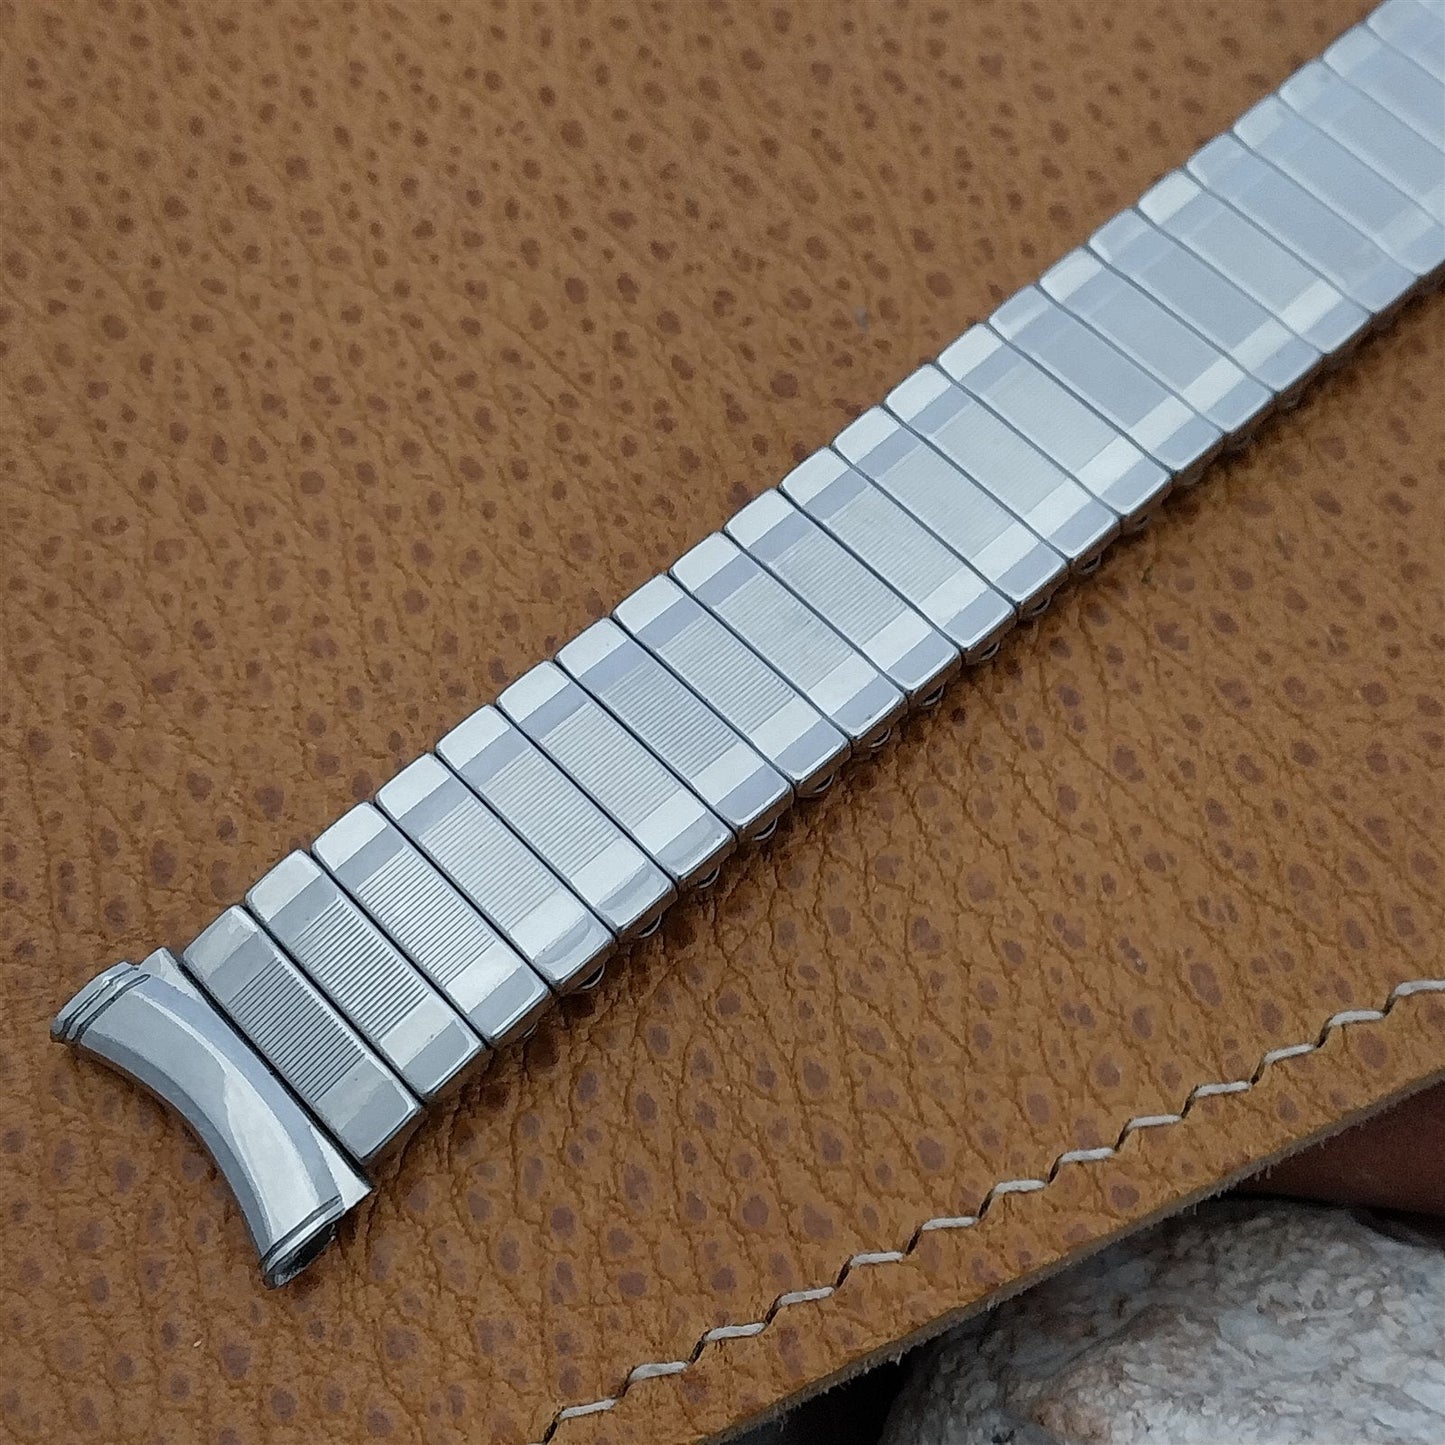 19mm 18mm 16mm Kreisler Classic Stainless Steel Unused 1960s Vintage Watch Band